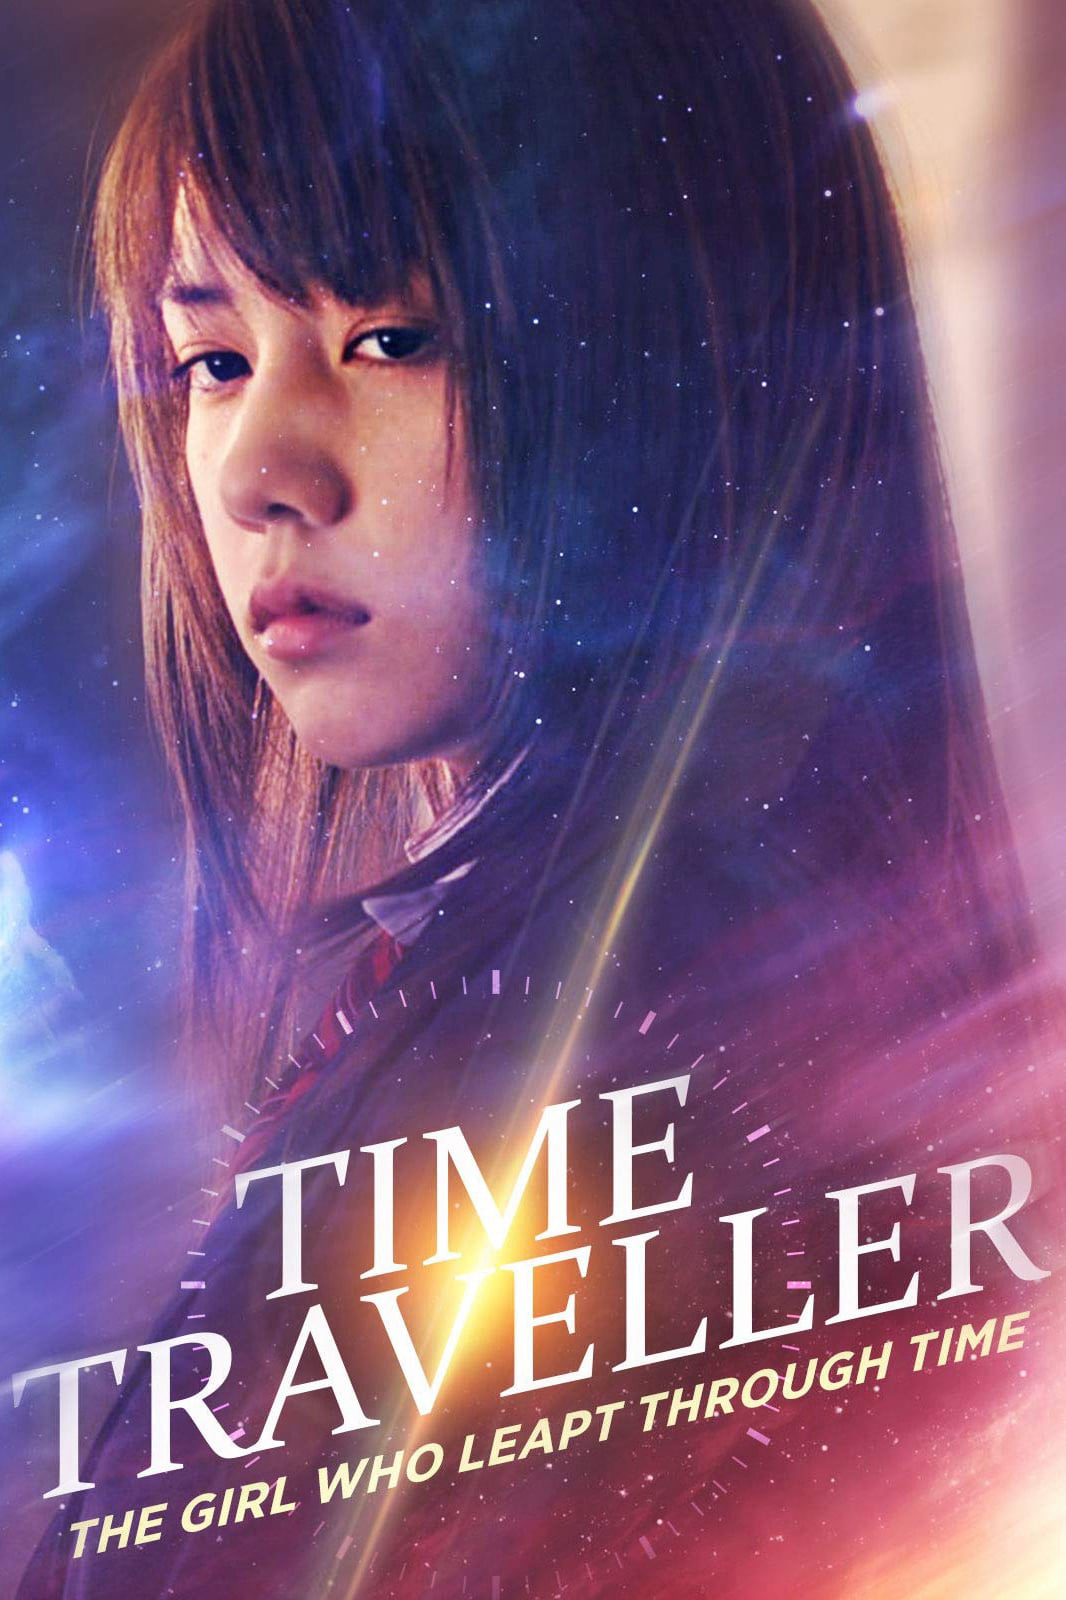 Poster Phim Cô Gái Vượt Thời Gian (Time Traveller - The Girl Who Leapt Through Time 2010)